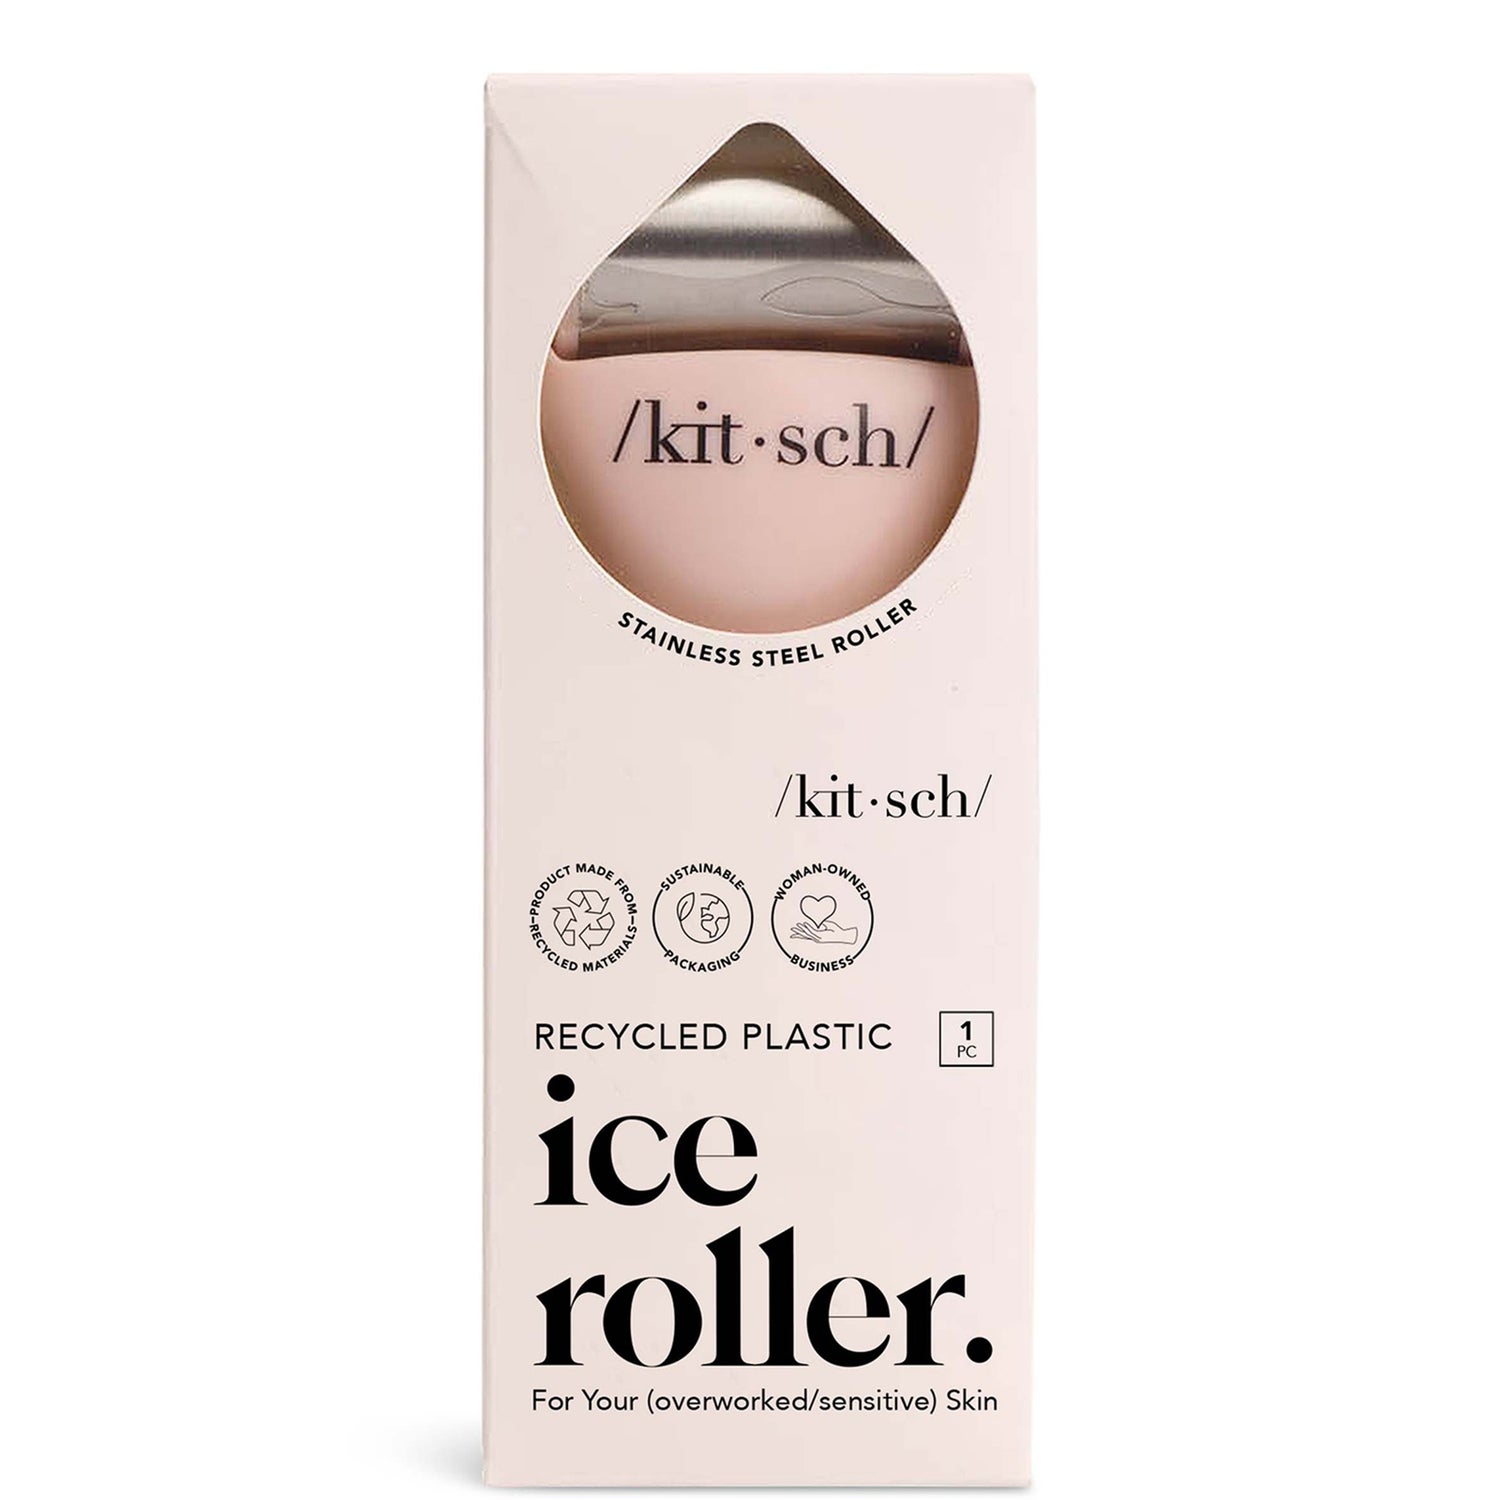 Kitsch Ice Facial Roller